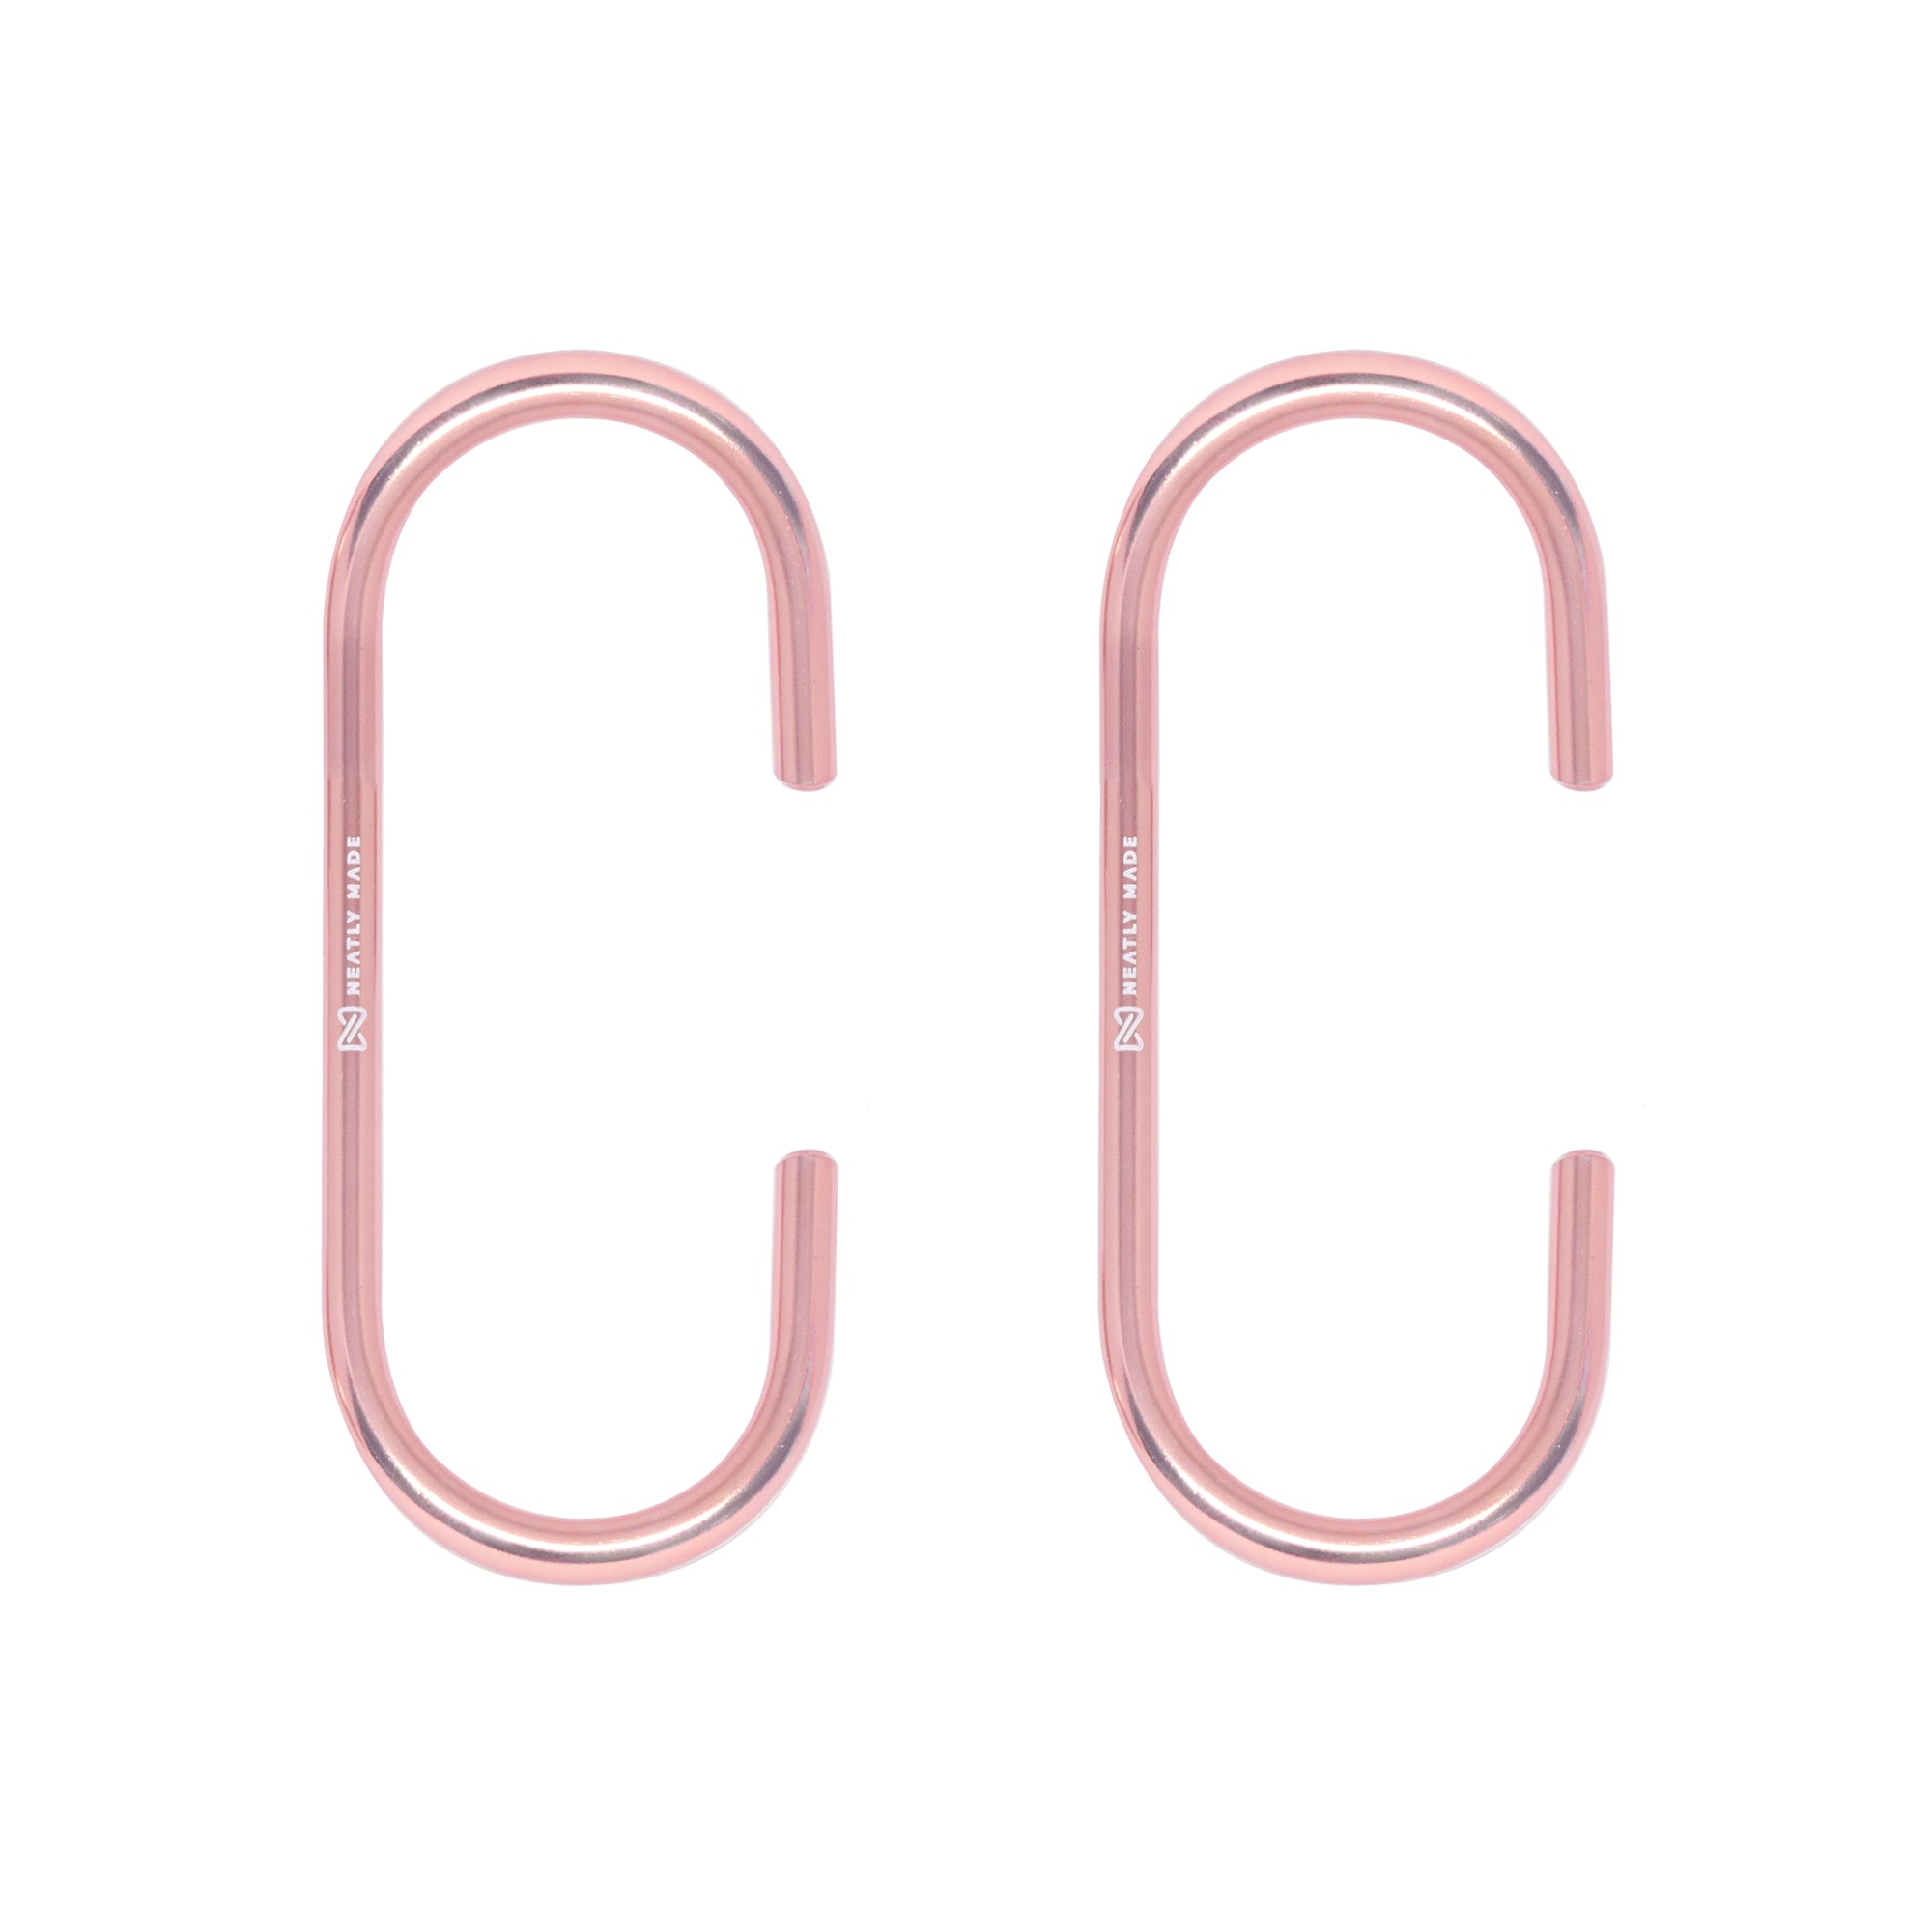 'C Hooks' For Closet Organization 2-Pack, Rose Gold Color